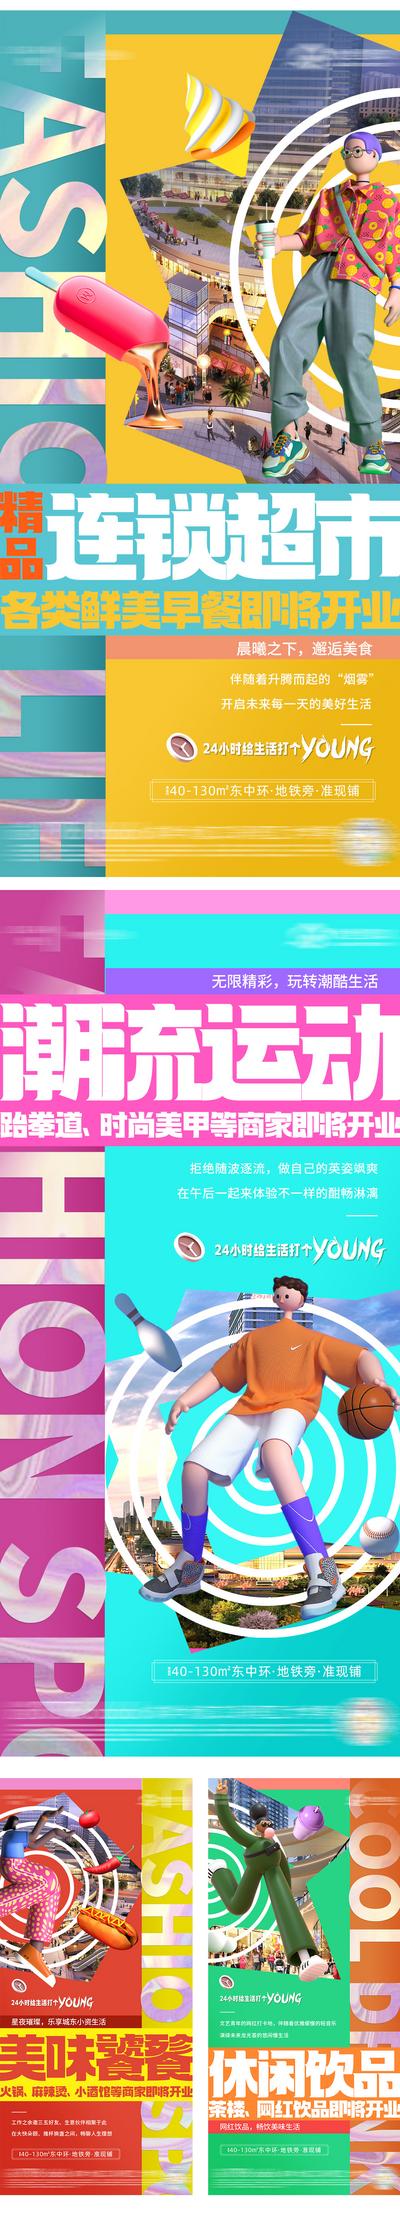 南门网 地产商铺排版炫彩系列海报